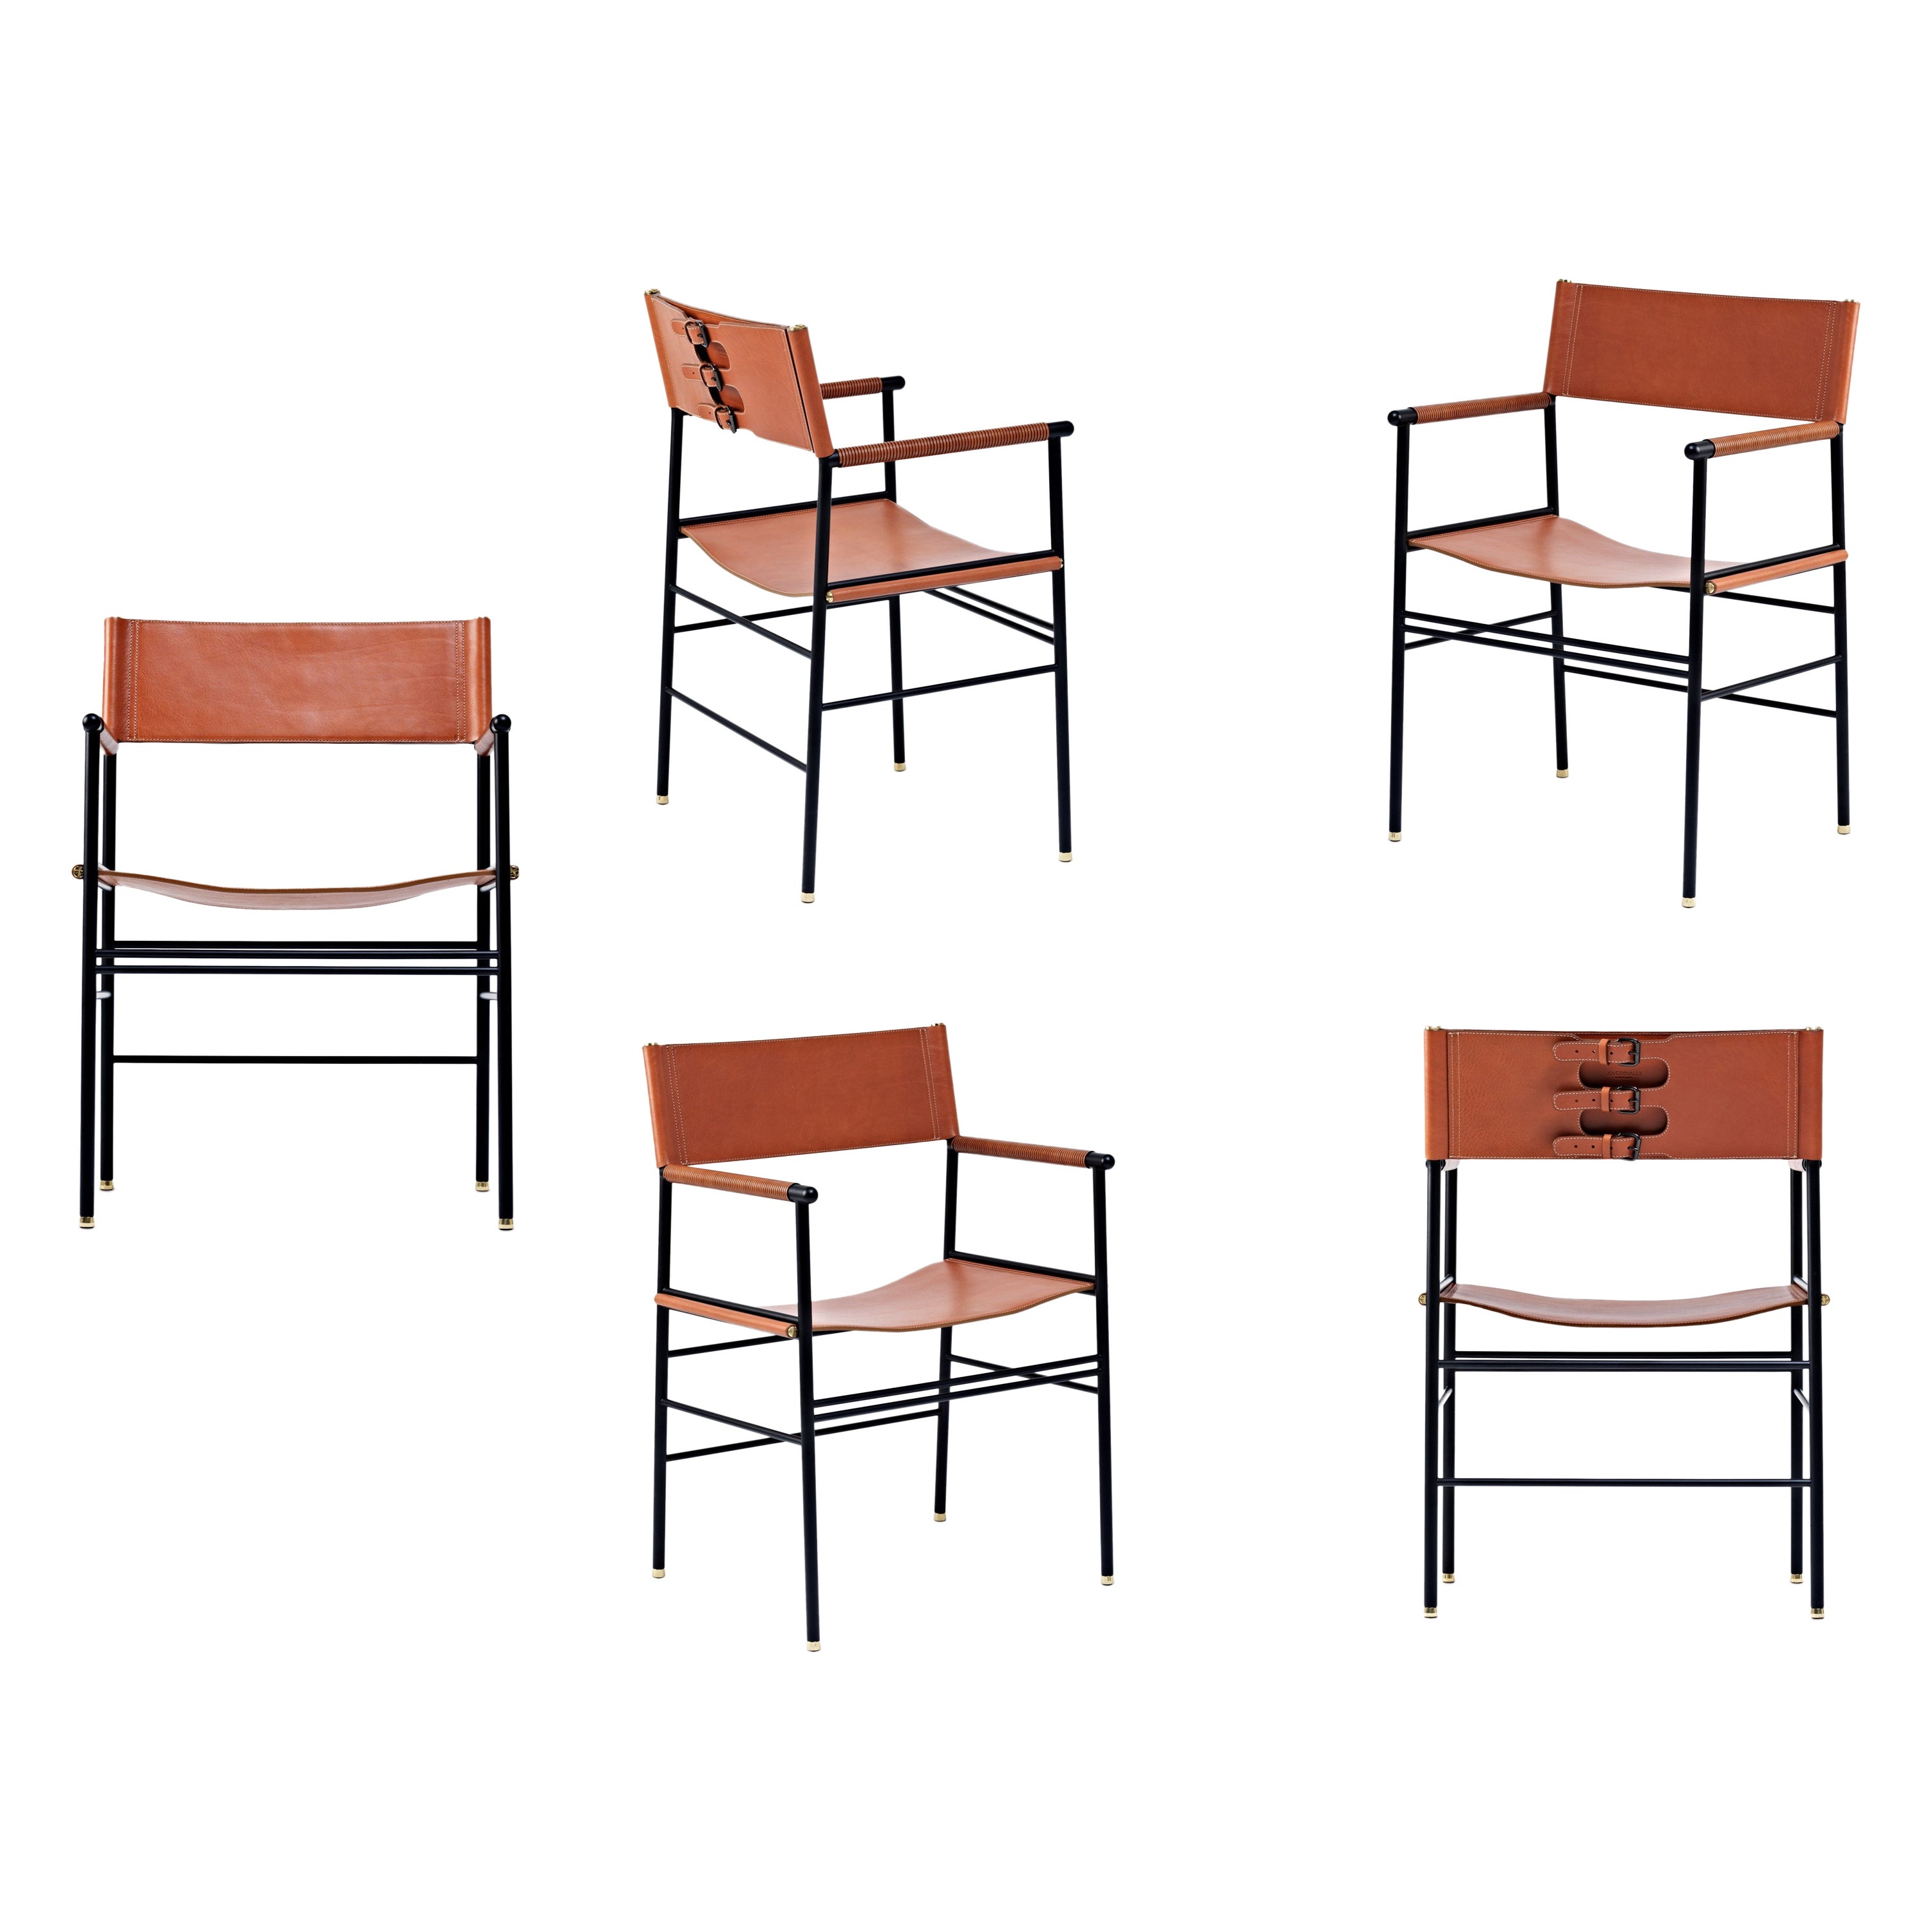 Ensemble de 5 chaises contemporaines artisanales en cuir naturel brun clair et métal en caoutchouc noir 